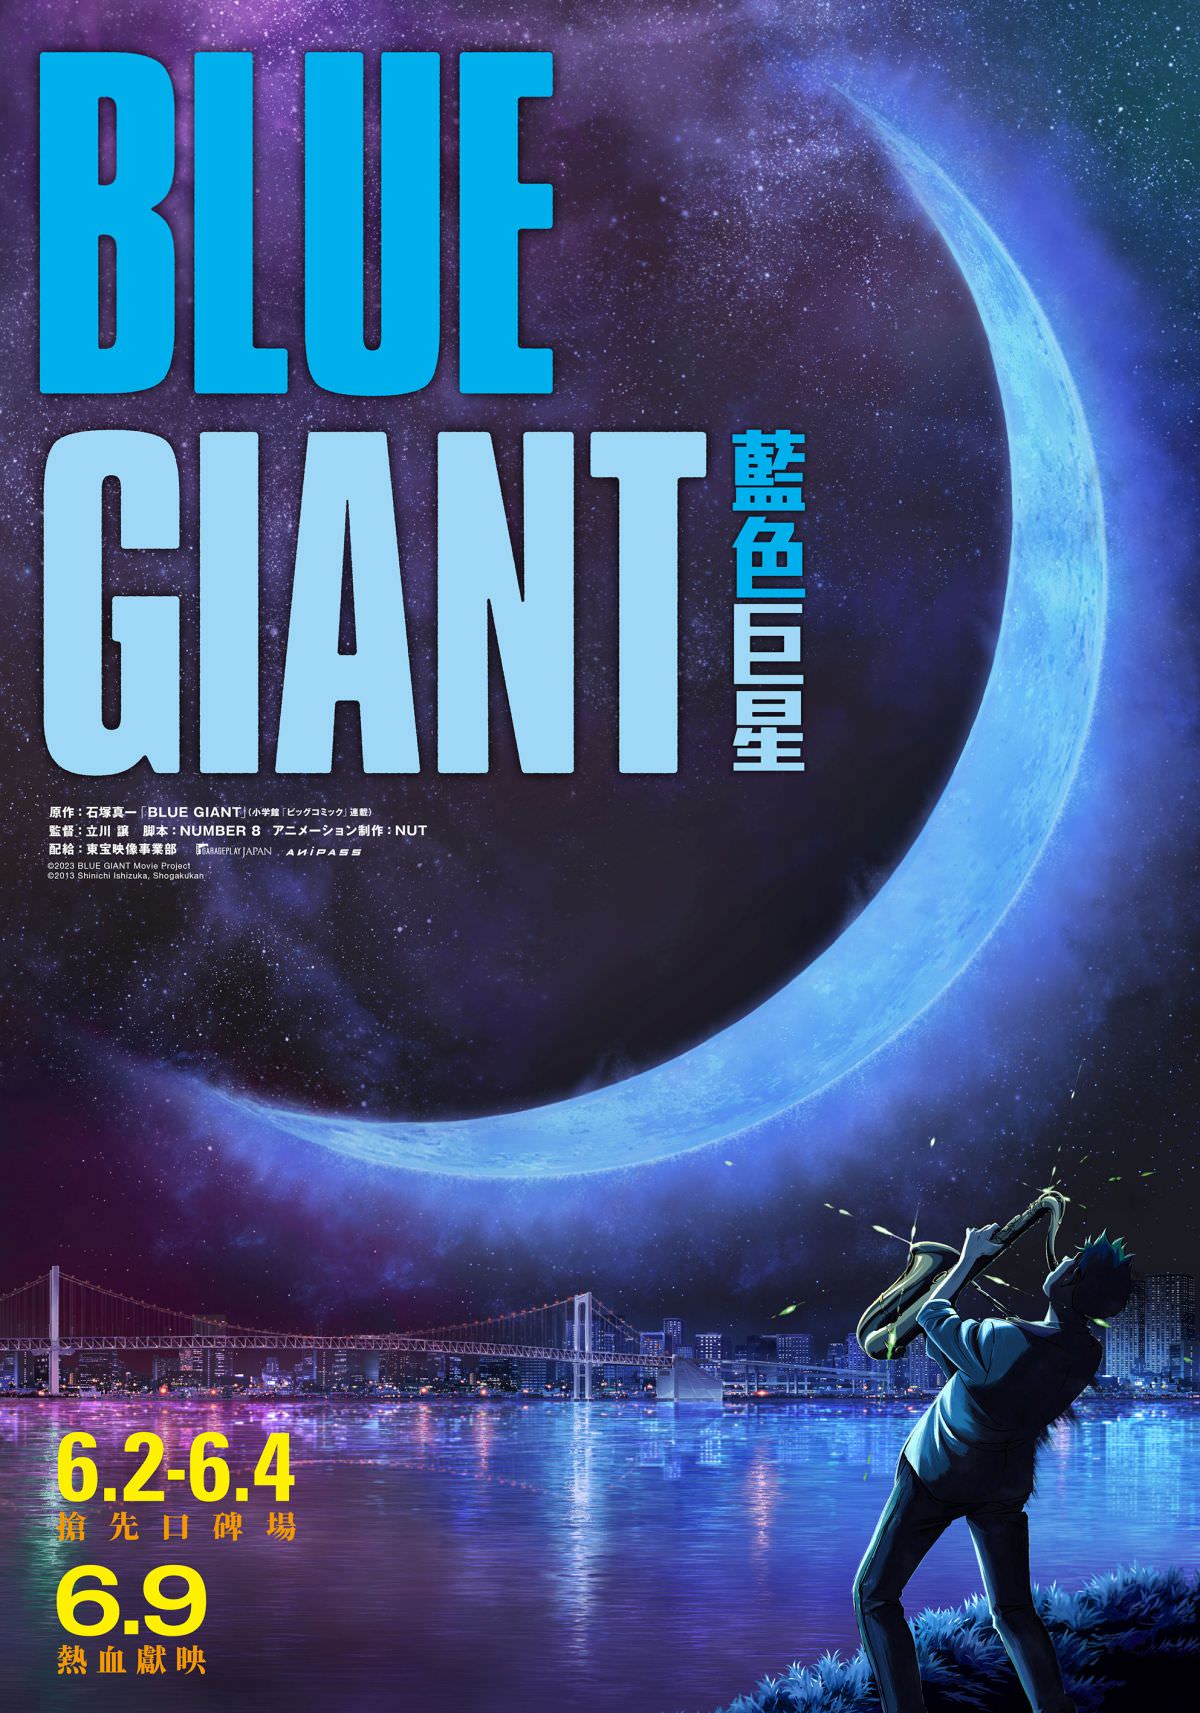 熱血音樂動畫《BLUE GIANT 藍色巨星》